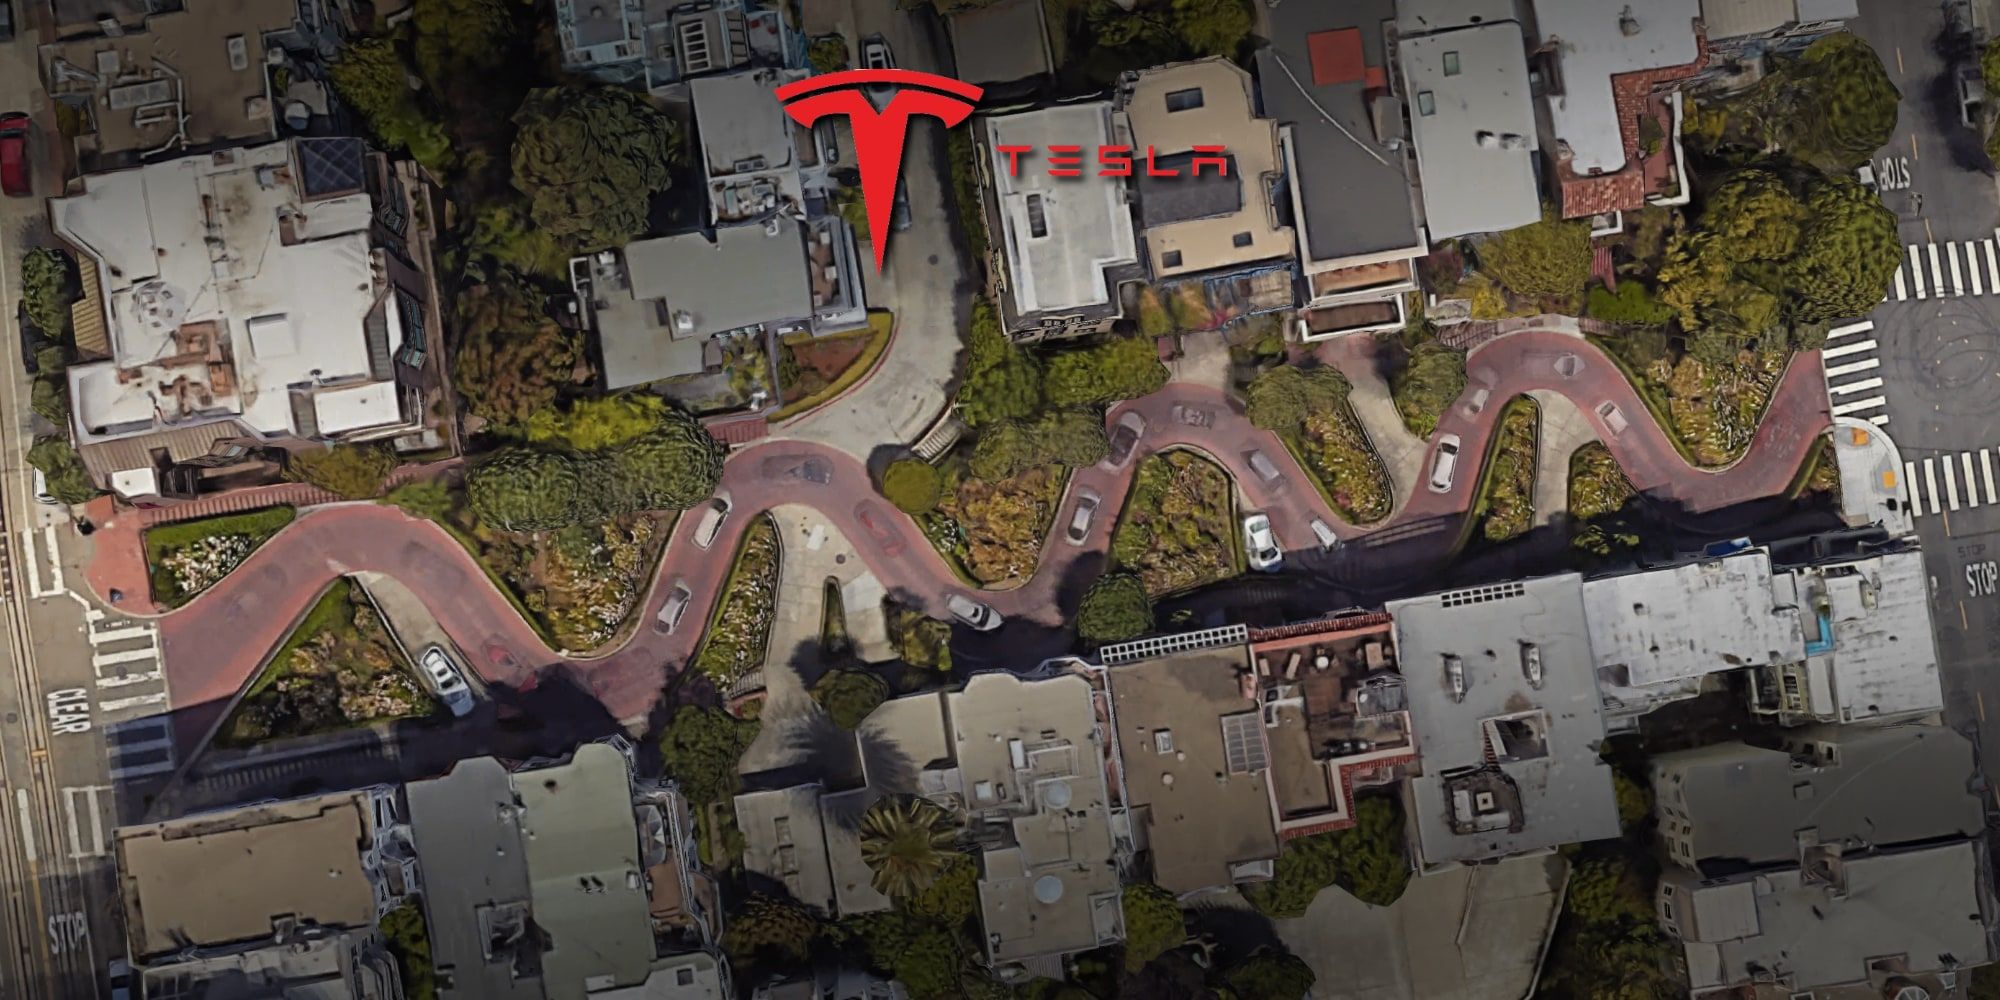 Watch Teslas SelfDriving Tech Navigate A Ridiculous San Francisco Street